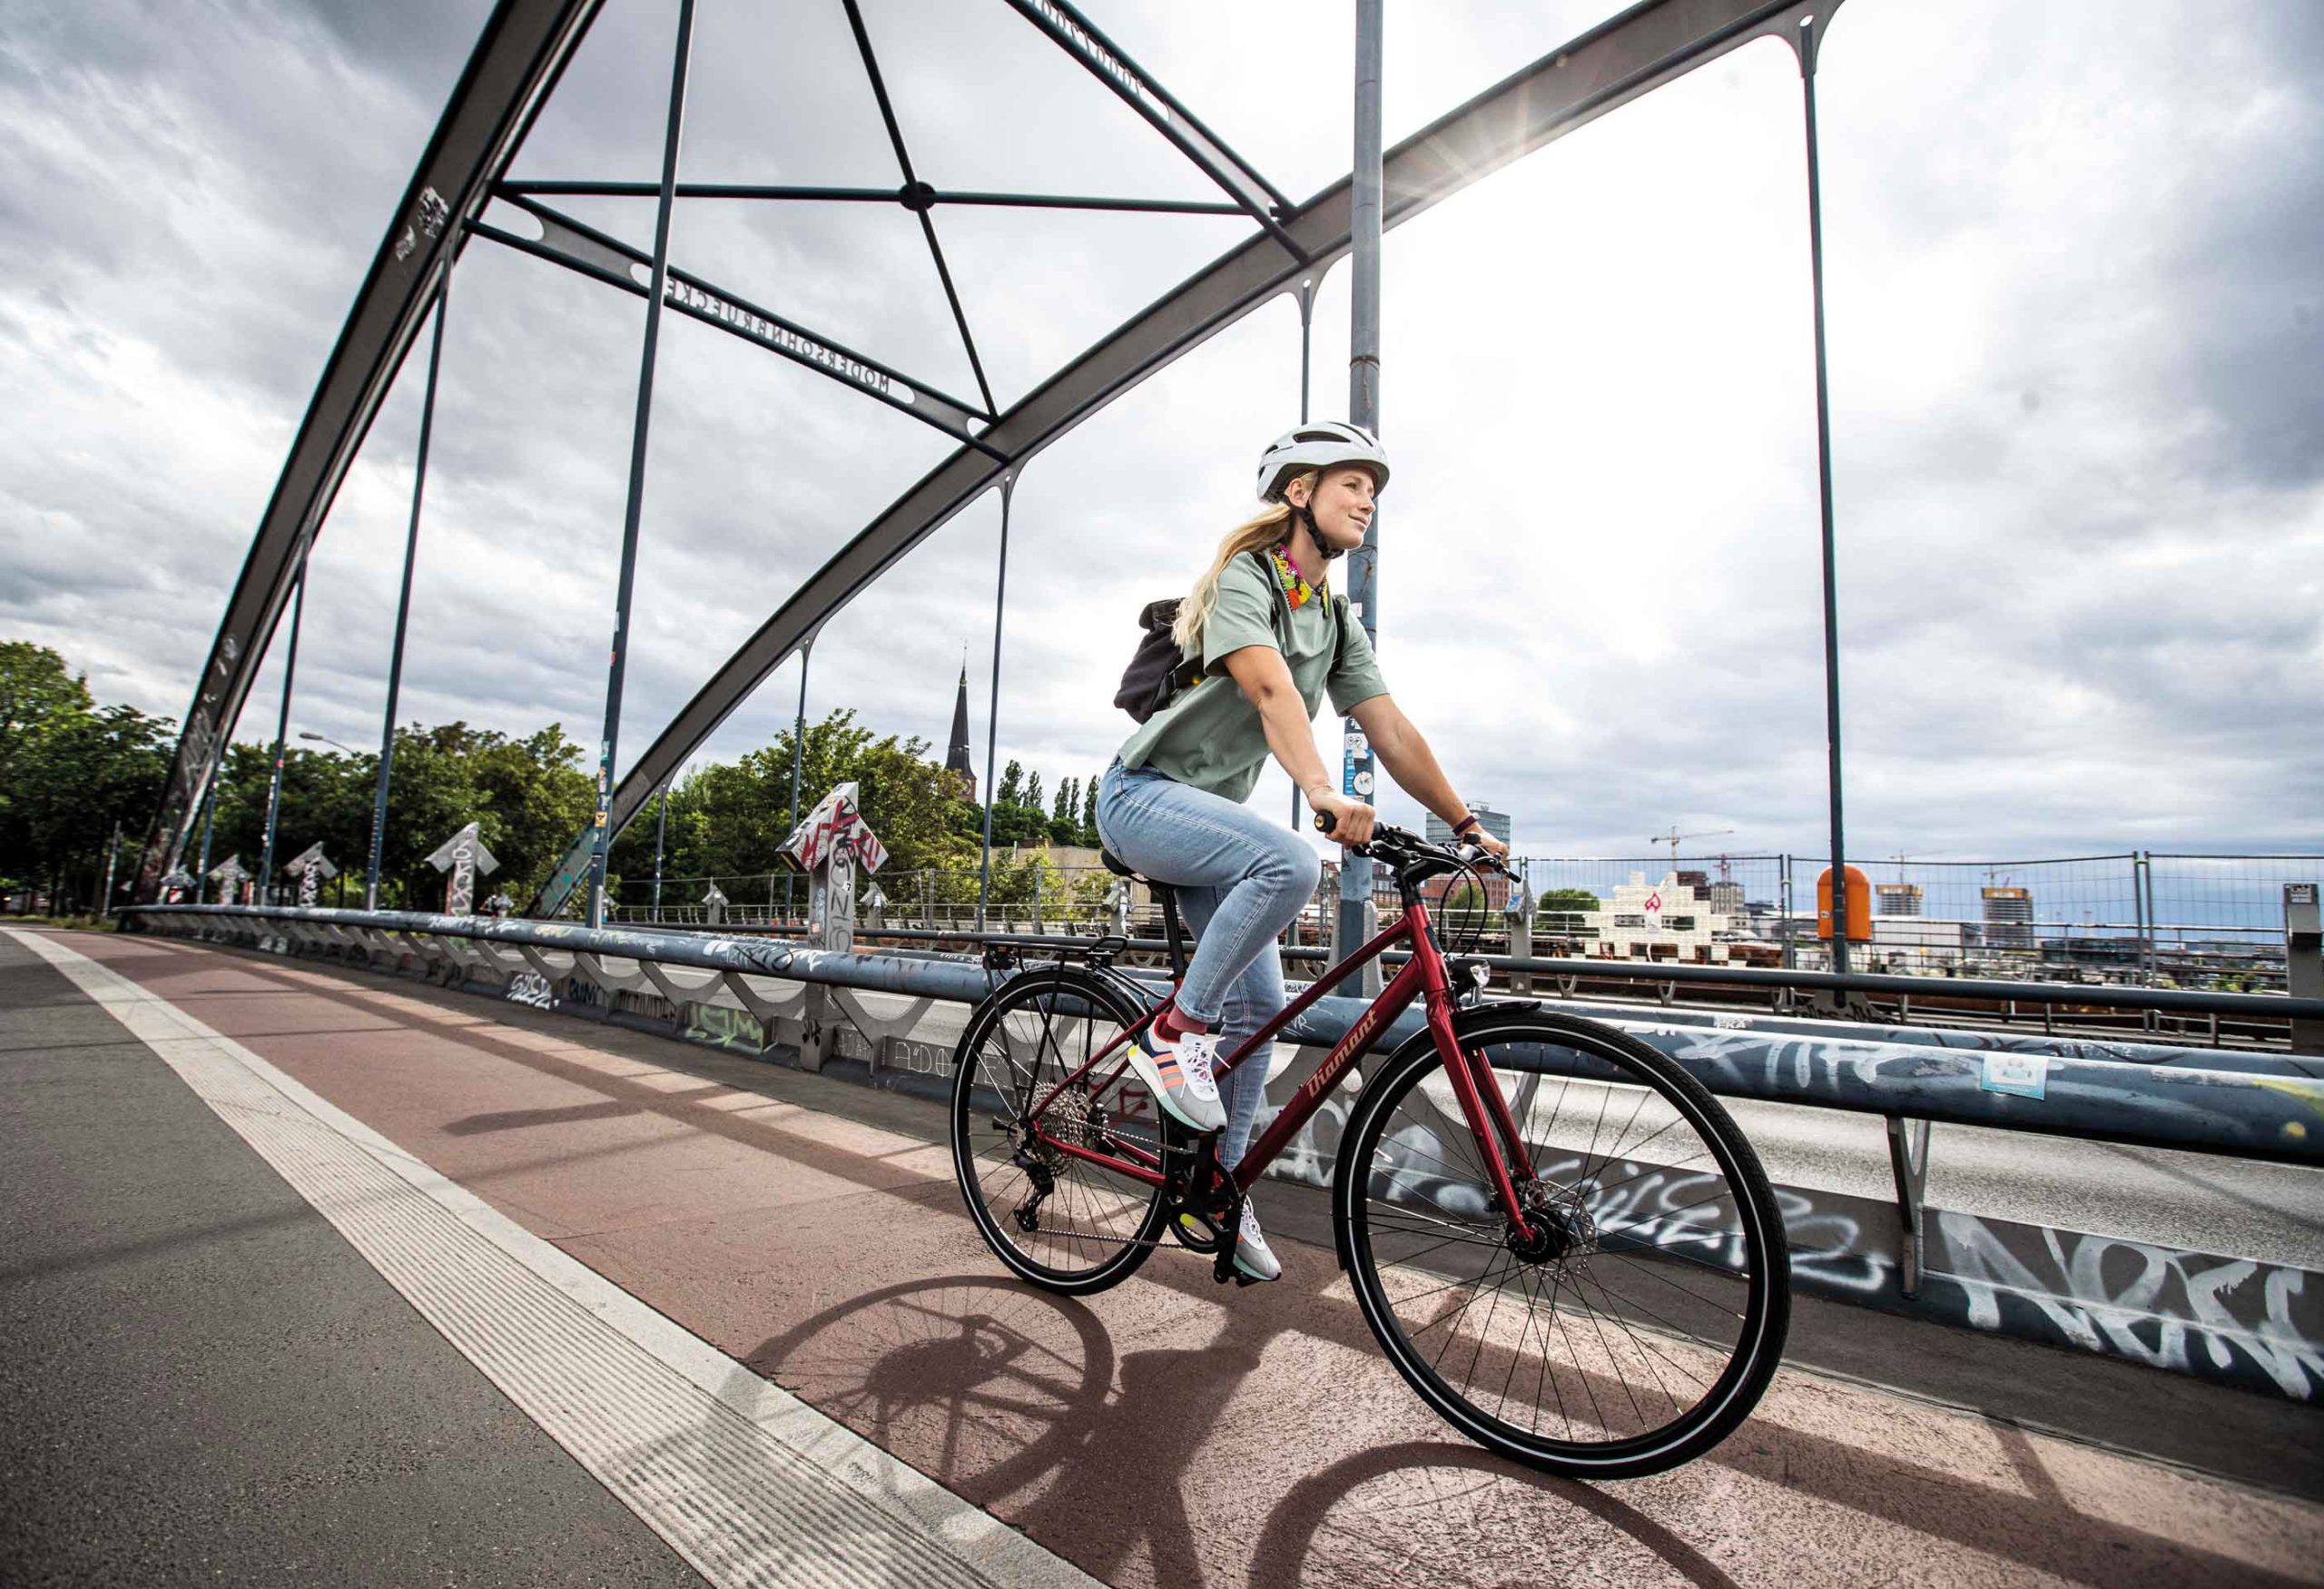 Cómo elegir el guardabarros de tu bicicleta - Blog Ciclismo